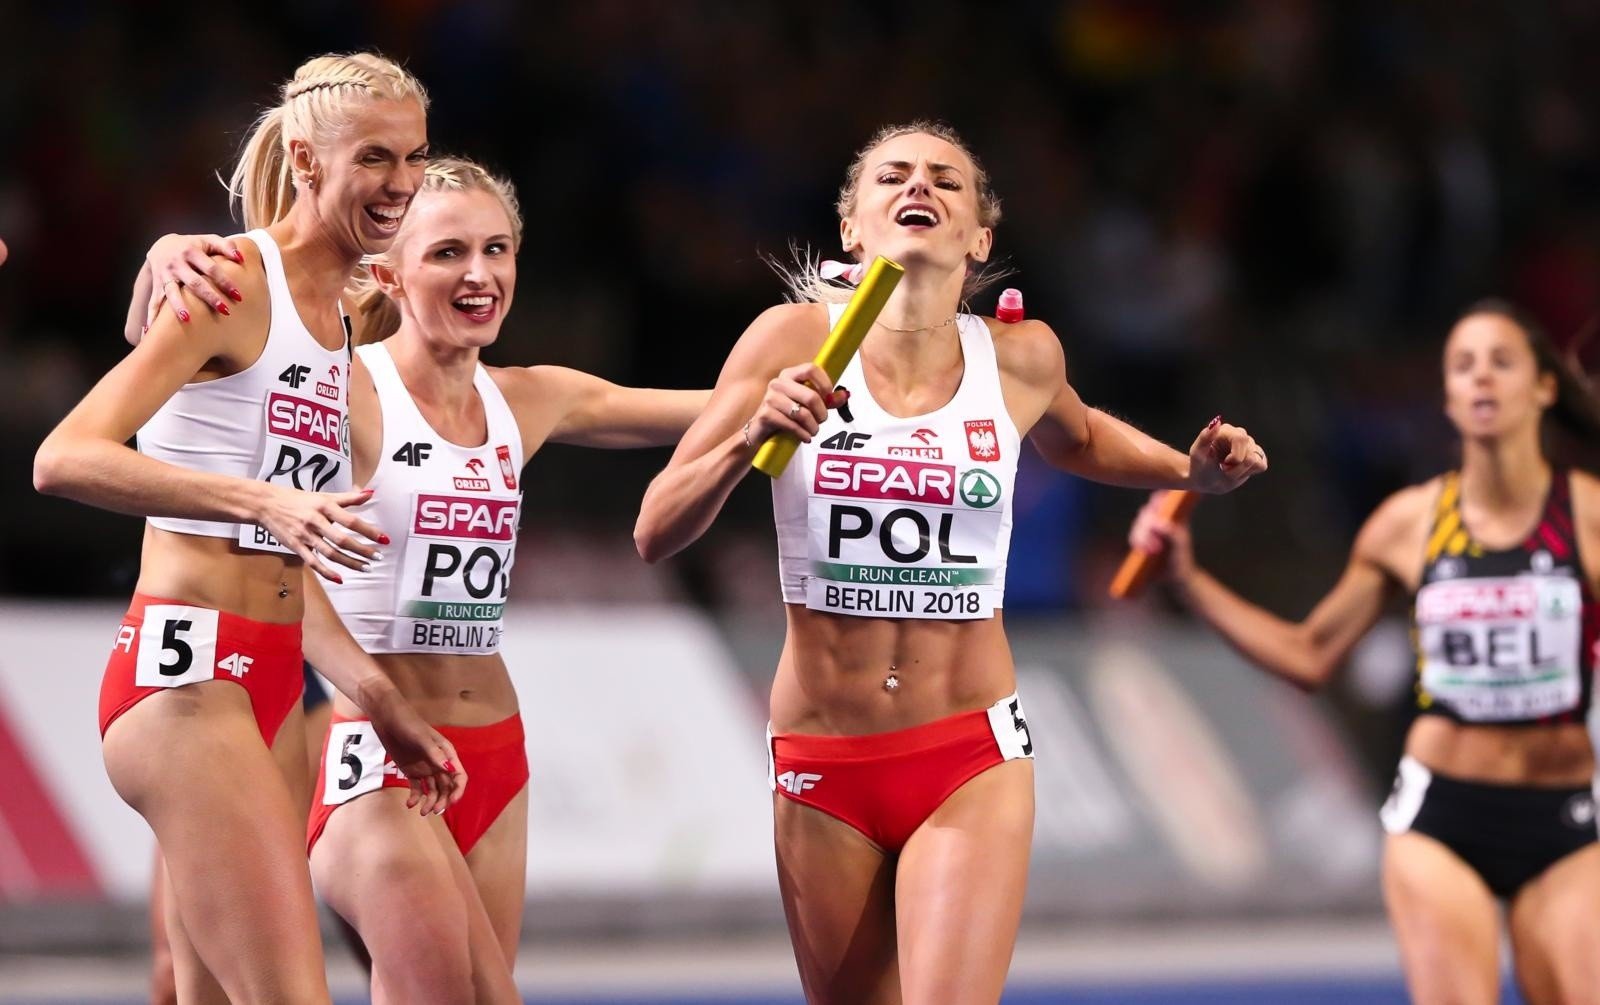 Doha 2019 Lekkoatletyczne Mistrzostwa Świata: Wyniki Polaków. Klasyfikacja  medalowa [TABELA] | Polska Times